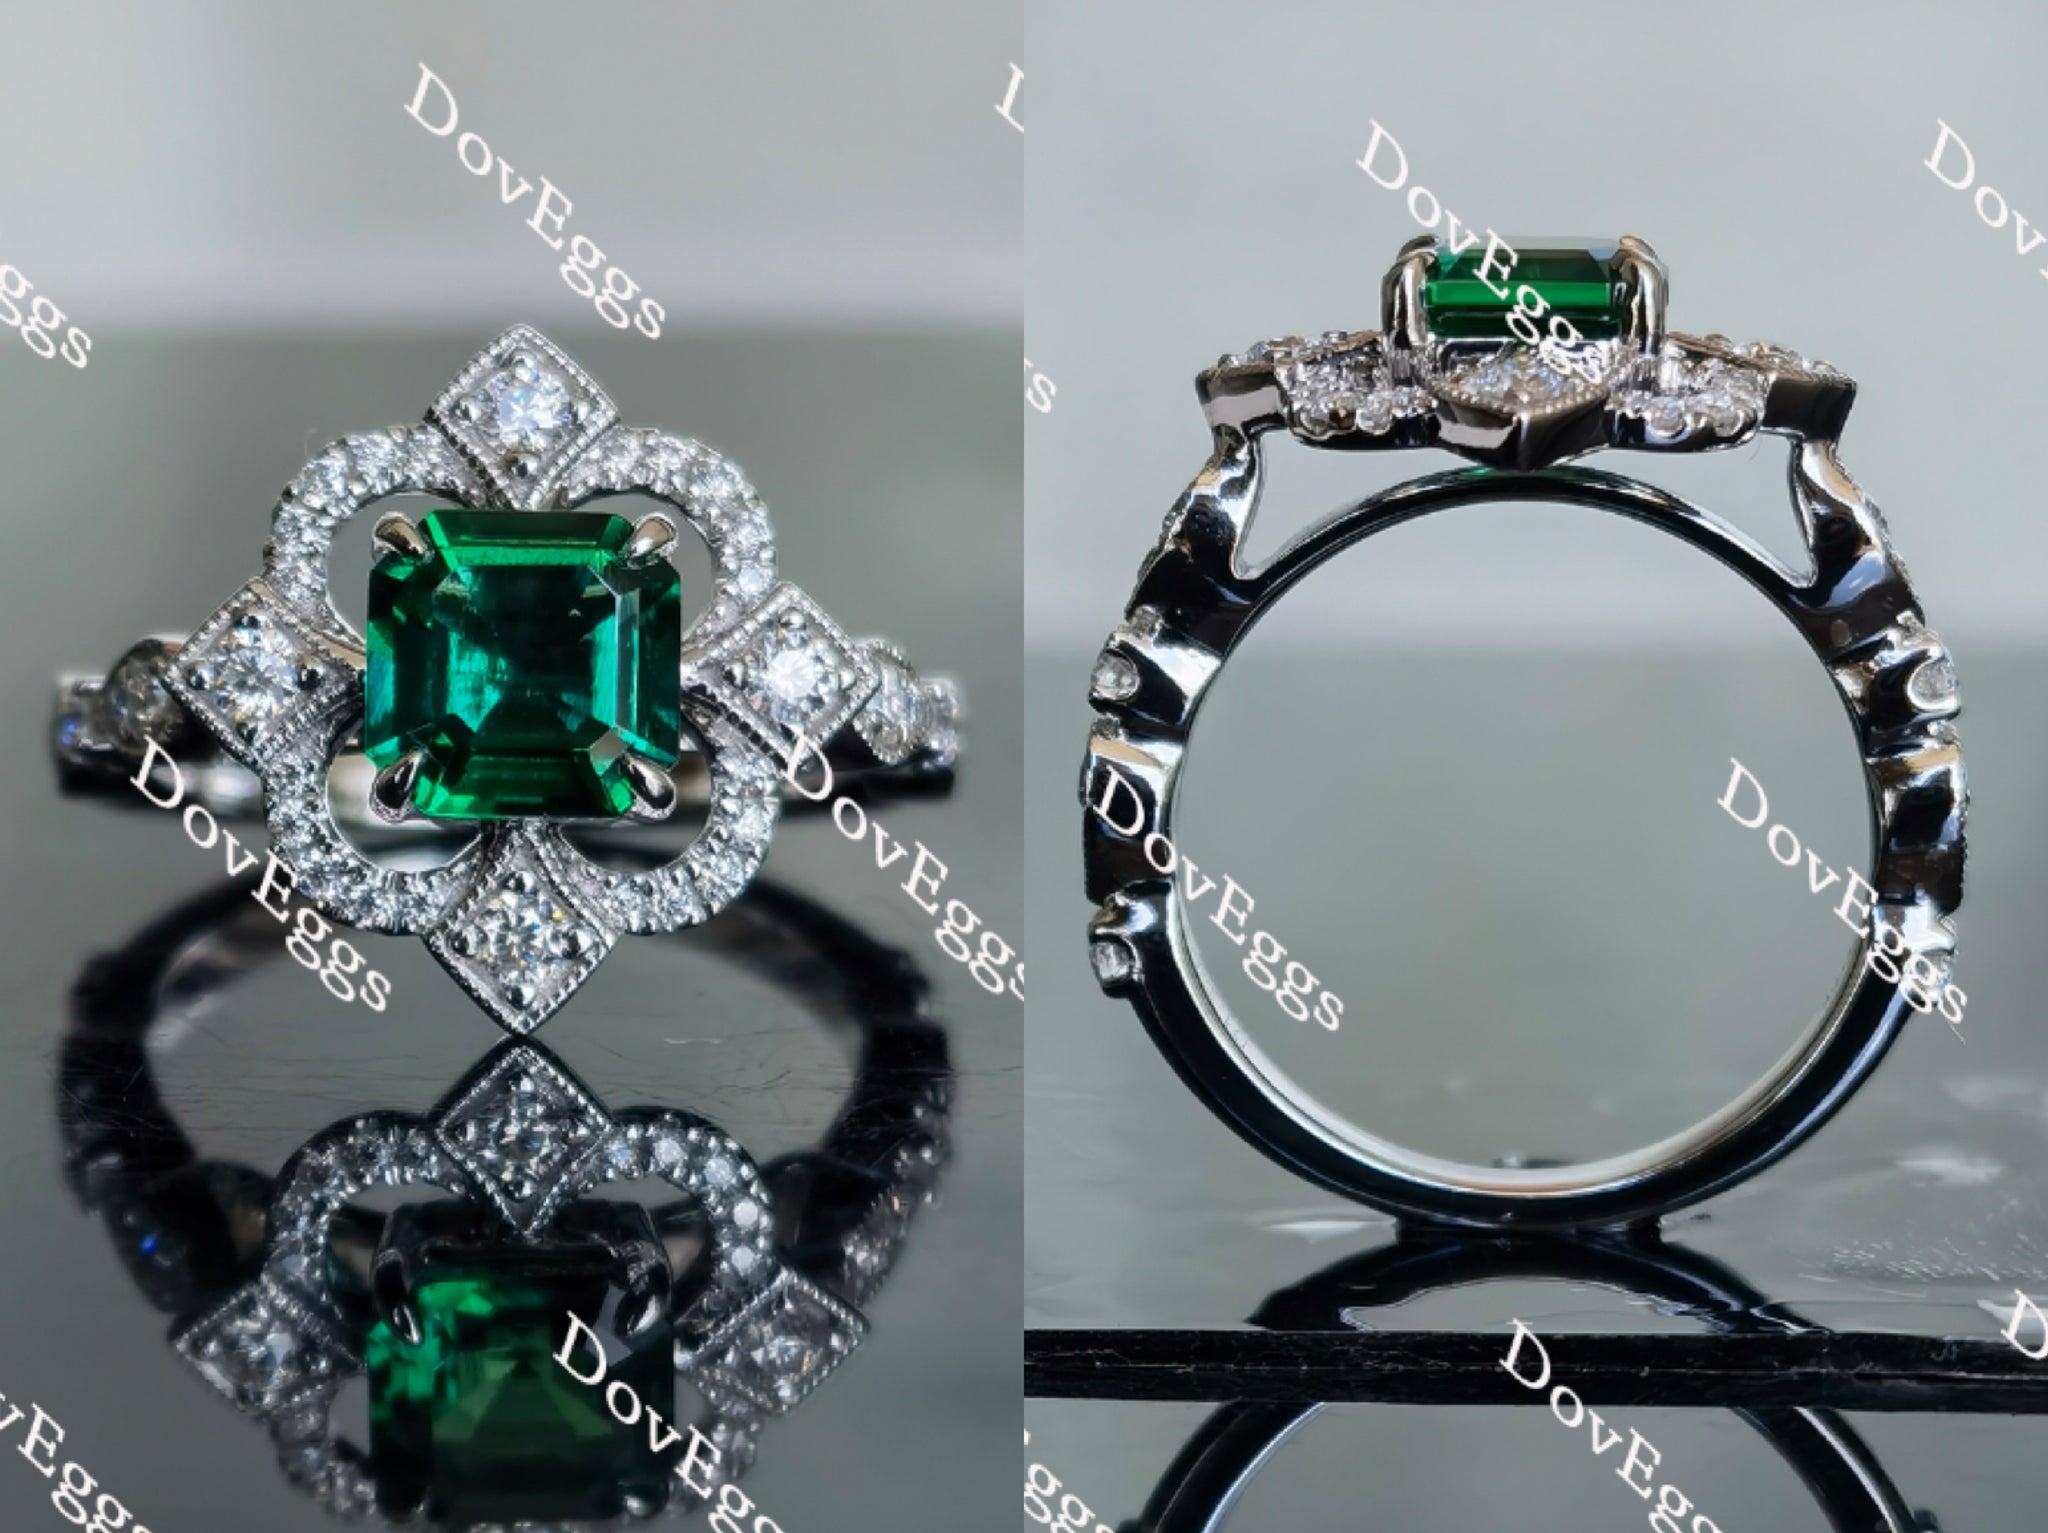 The aviator's flower Asscher shape zambia emerald colored gem ring